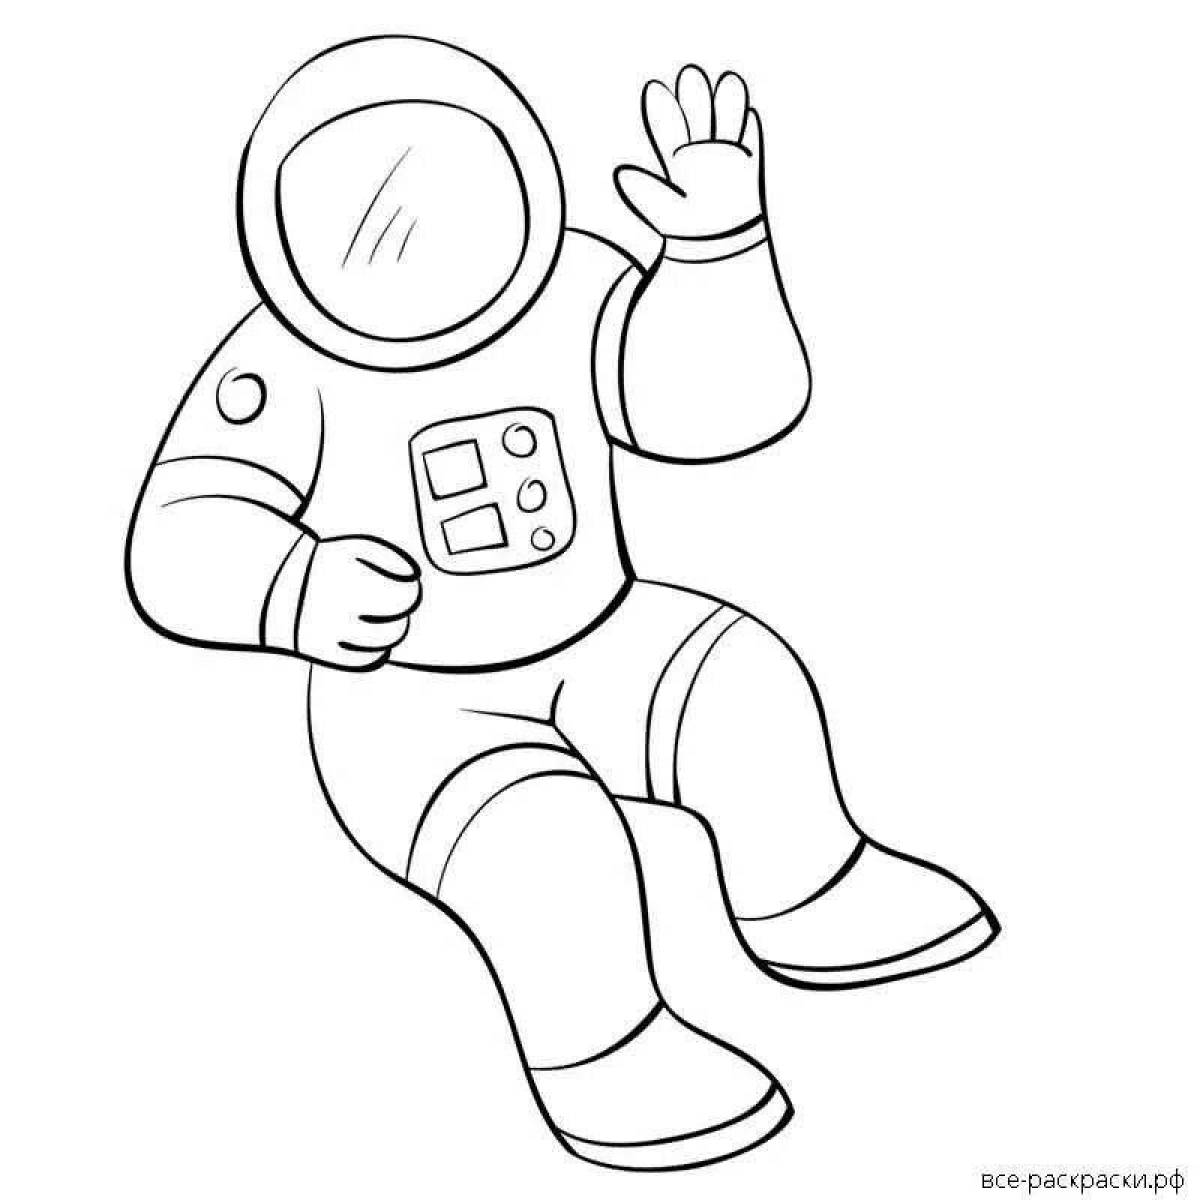 Легкий рисунок космонавта. Космонавт раскраска для детей. Космонавт раскраска для малышей. Космонавт для раскрашивания для детей. Раскраска Космонавта в скафандре для детей.